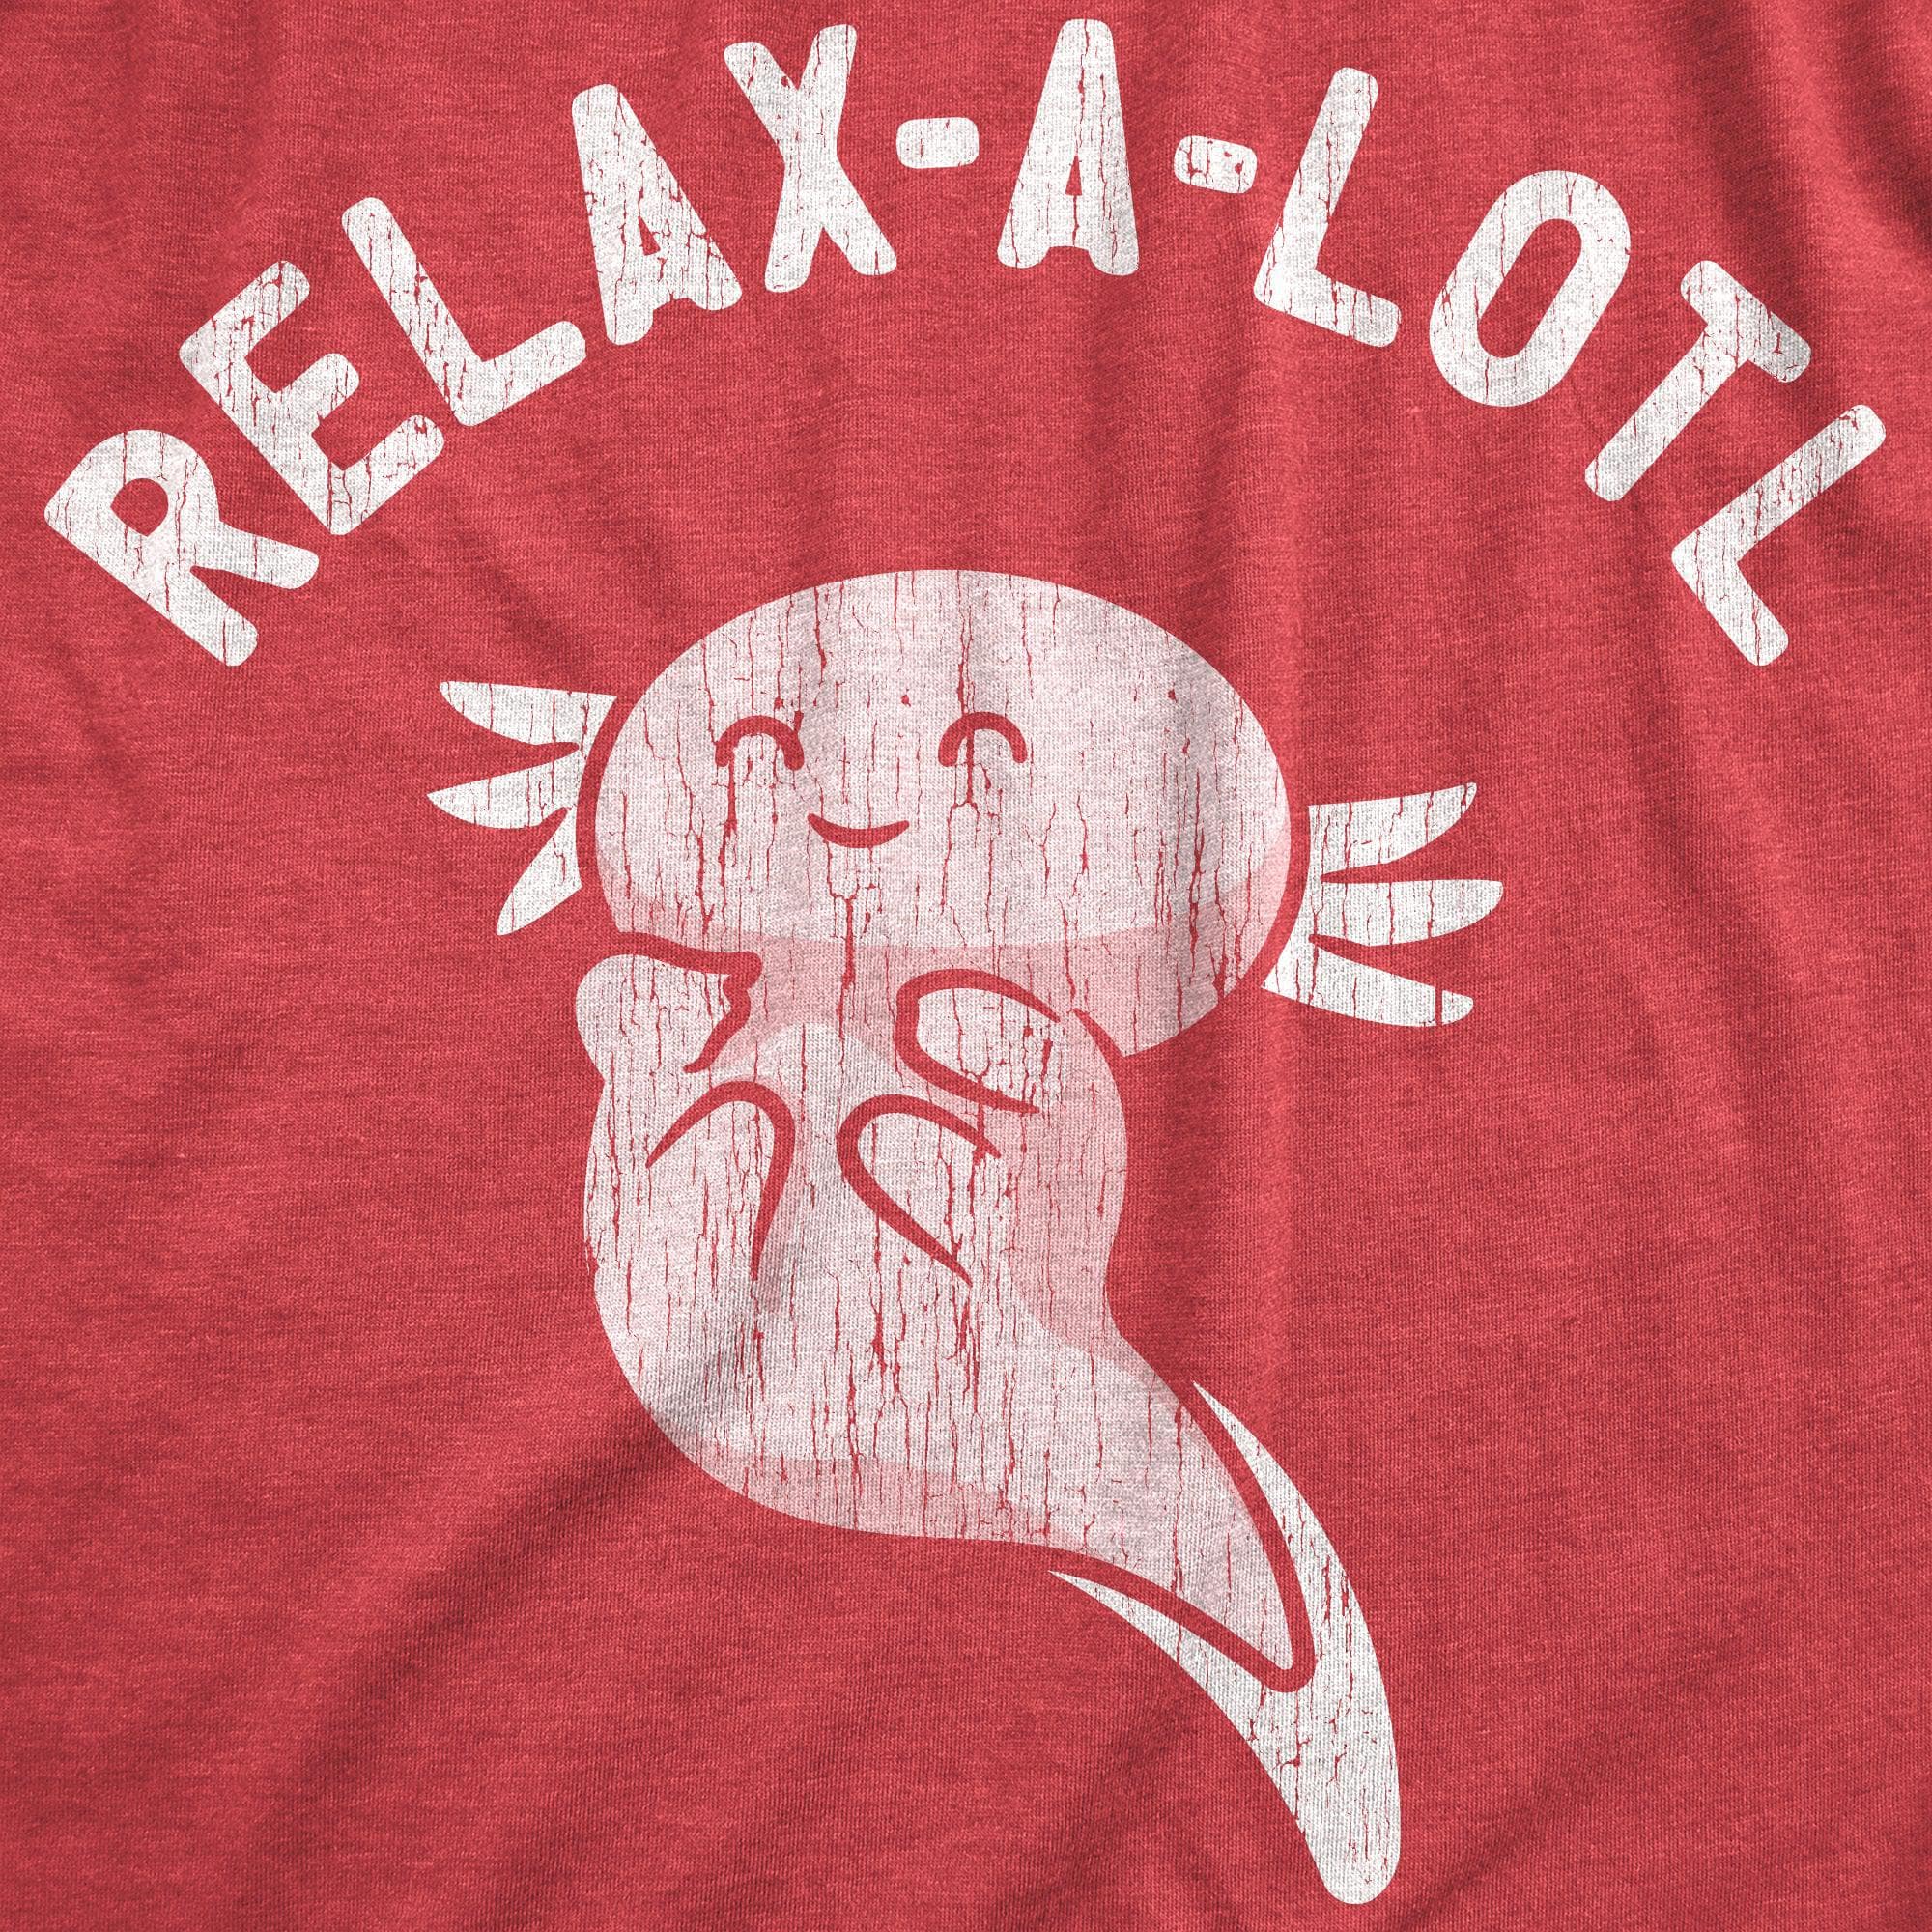 Relax A Lotl Men's Tshirt  -  Crazy Dog T-Shirts